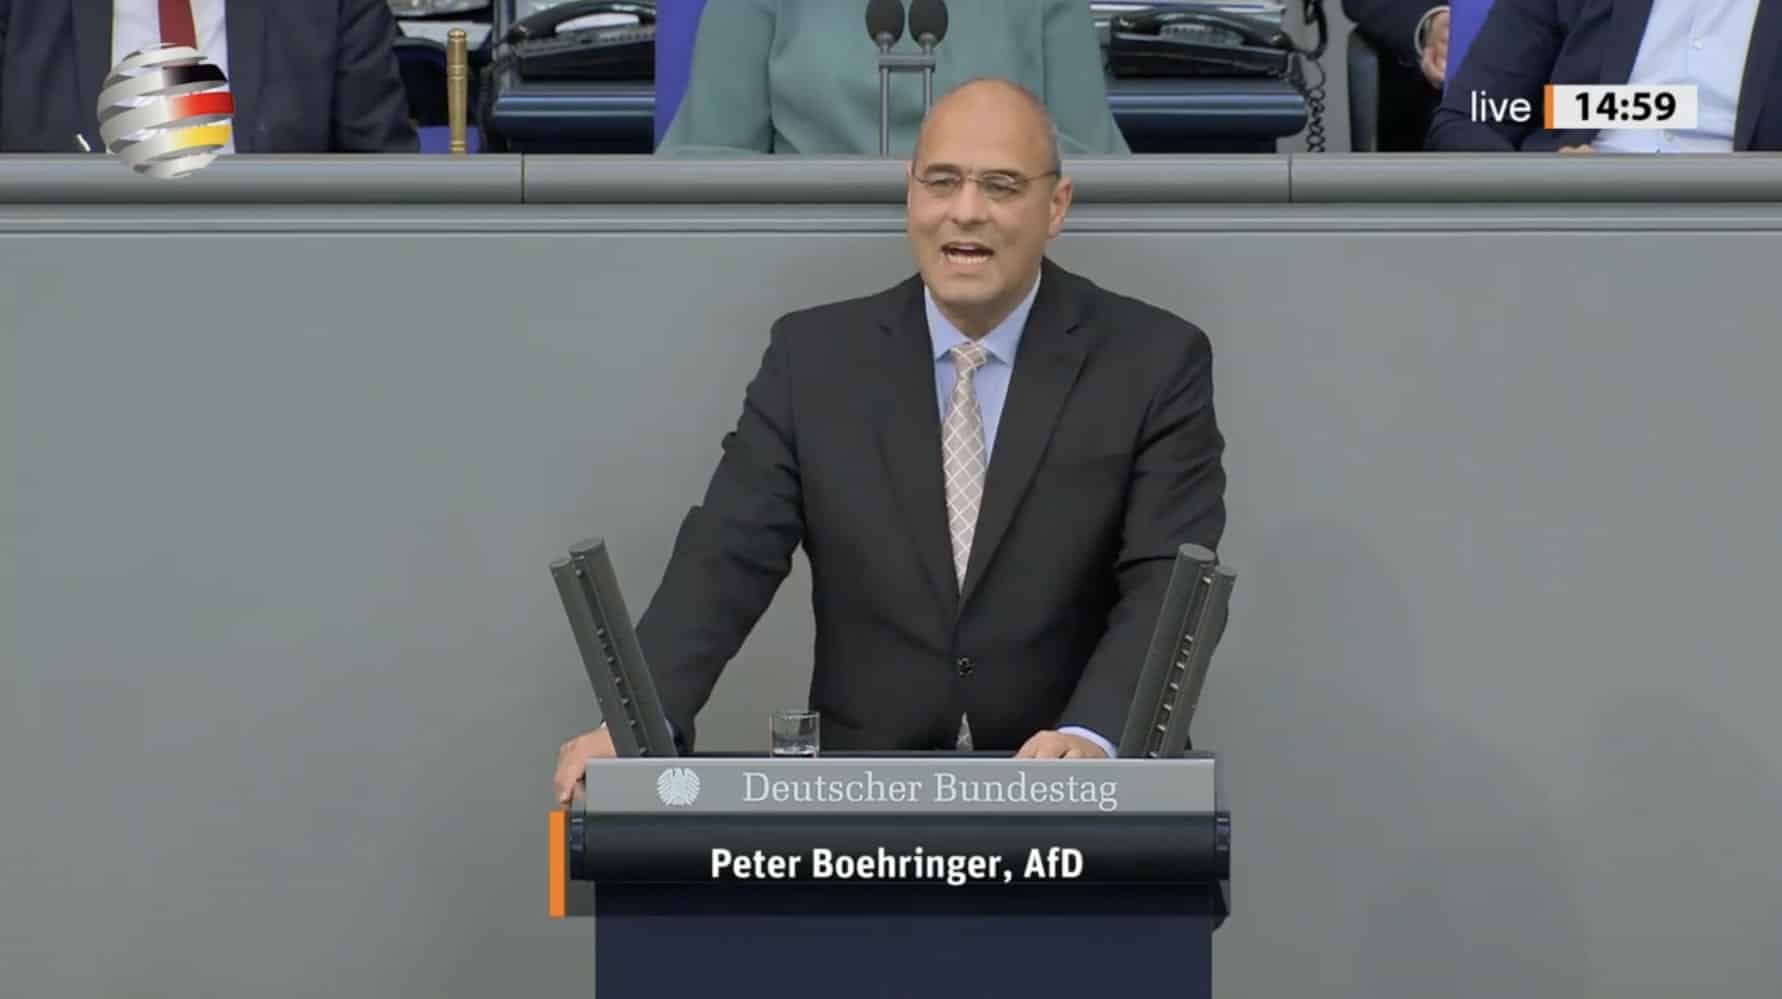 peter-boehringer-(afd):-„fuehren-sie-endlich-eine-unvoreingenommene-politik-zum-wohl-deutschlands-aus!